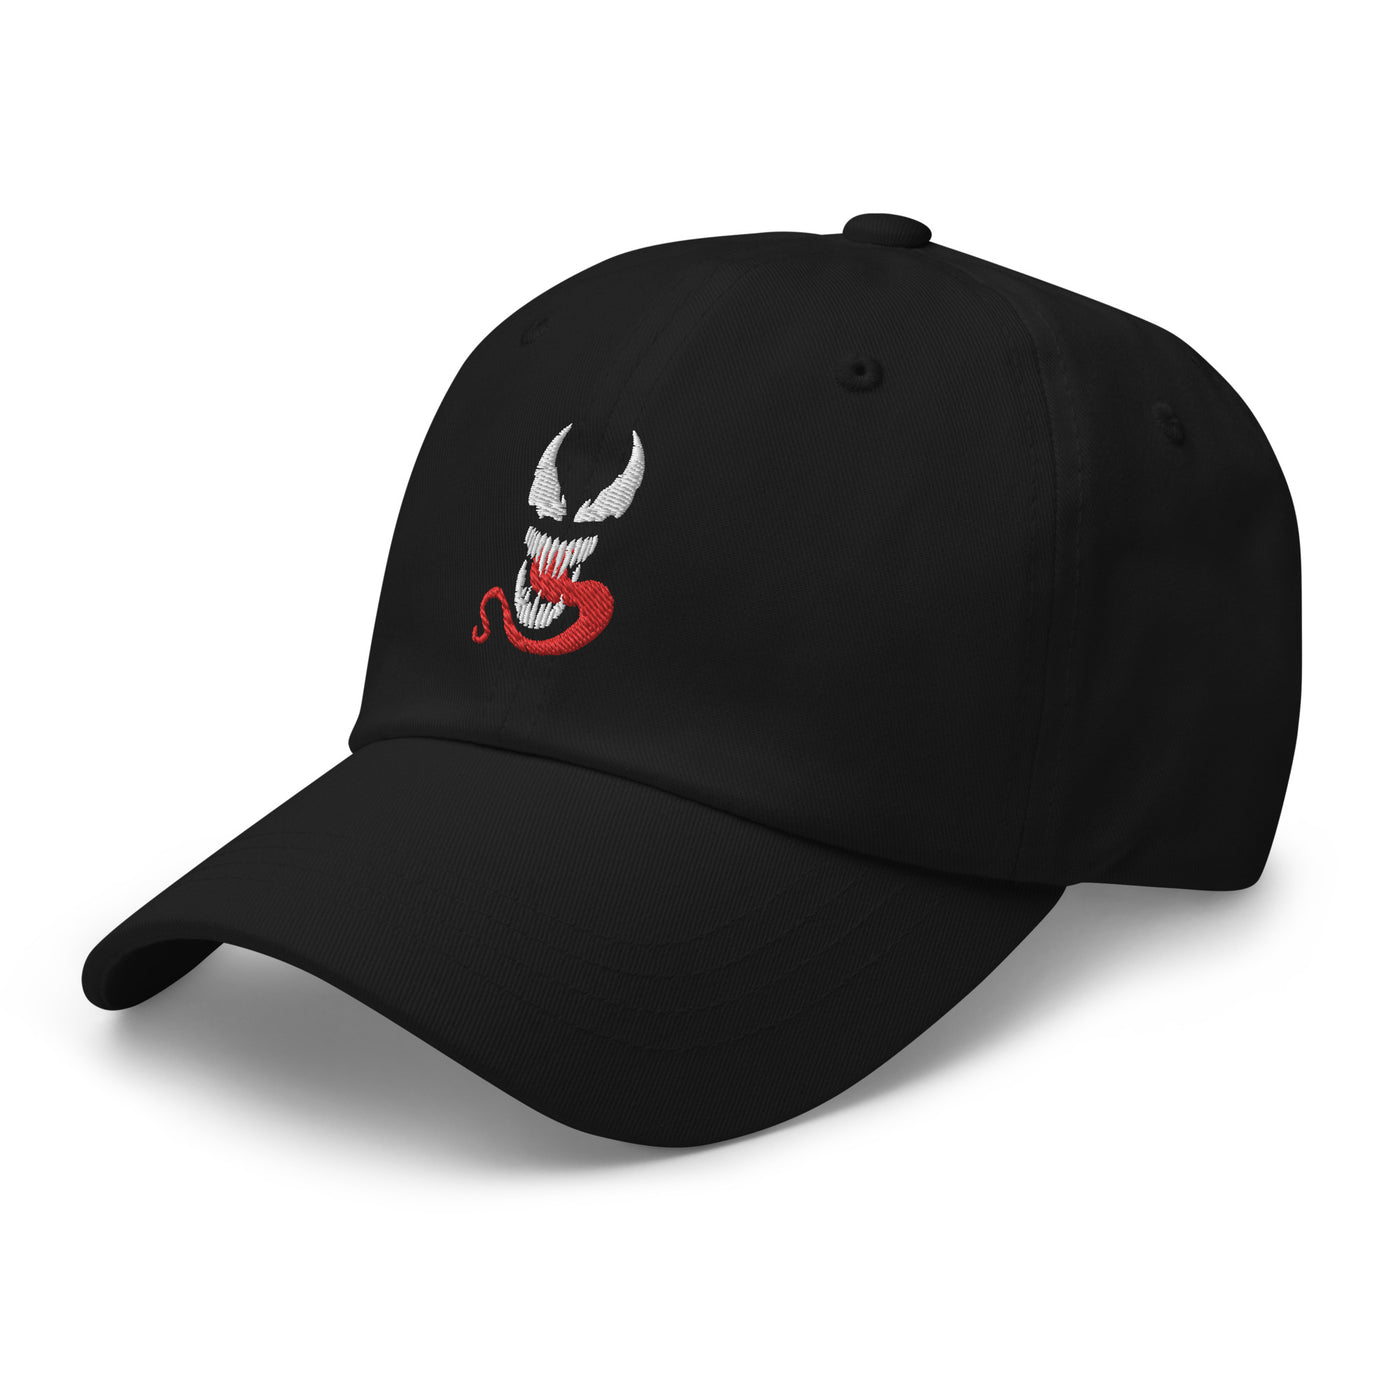 Venom Rip Unisex Hat